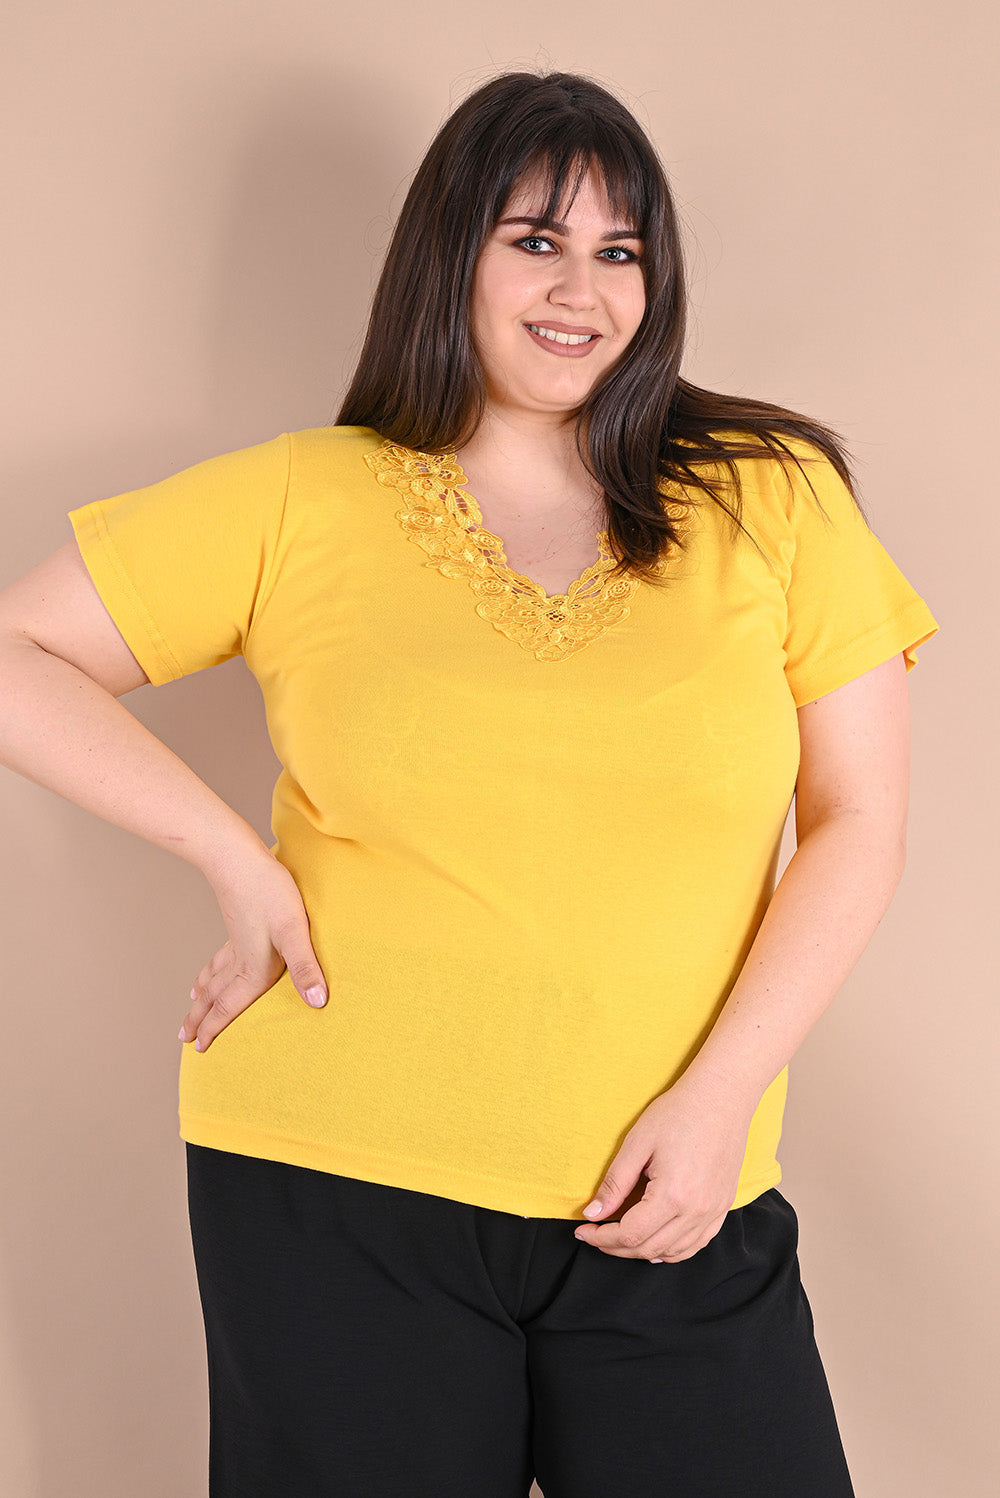 Κίτρινη βαμβακερή μπλούζα με δαντέλα σε μεγάλα μεγέθη